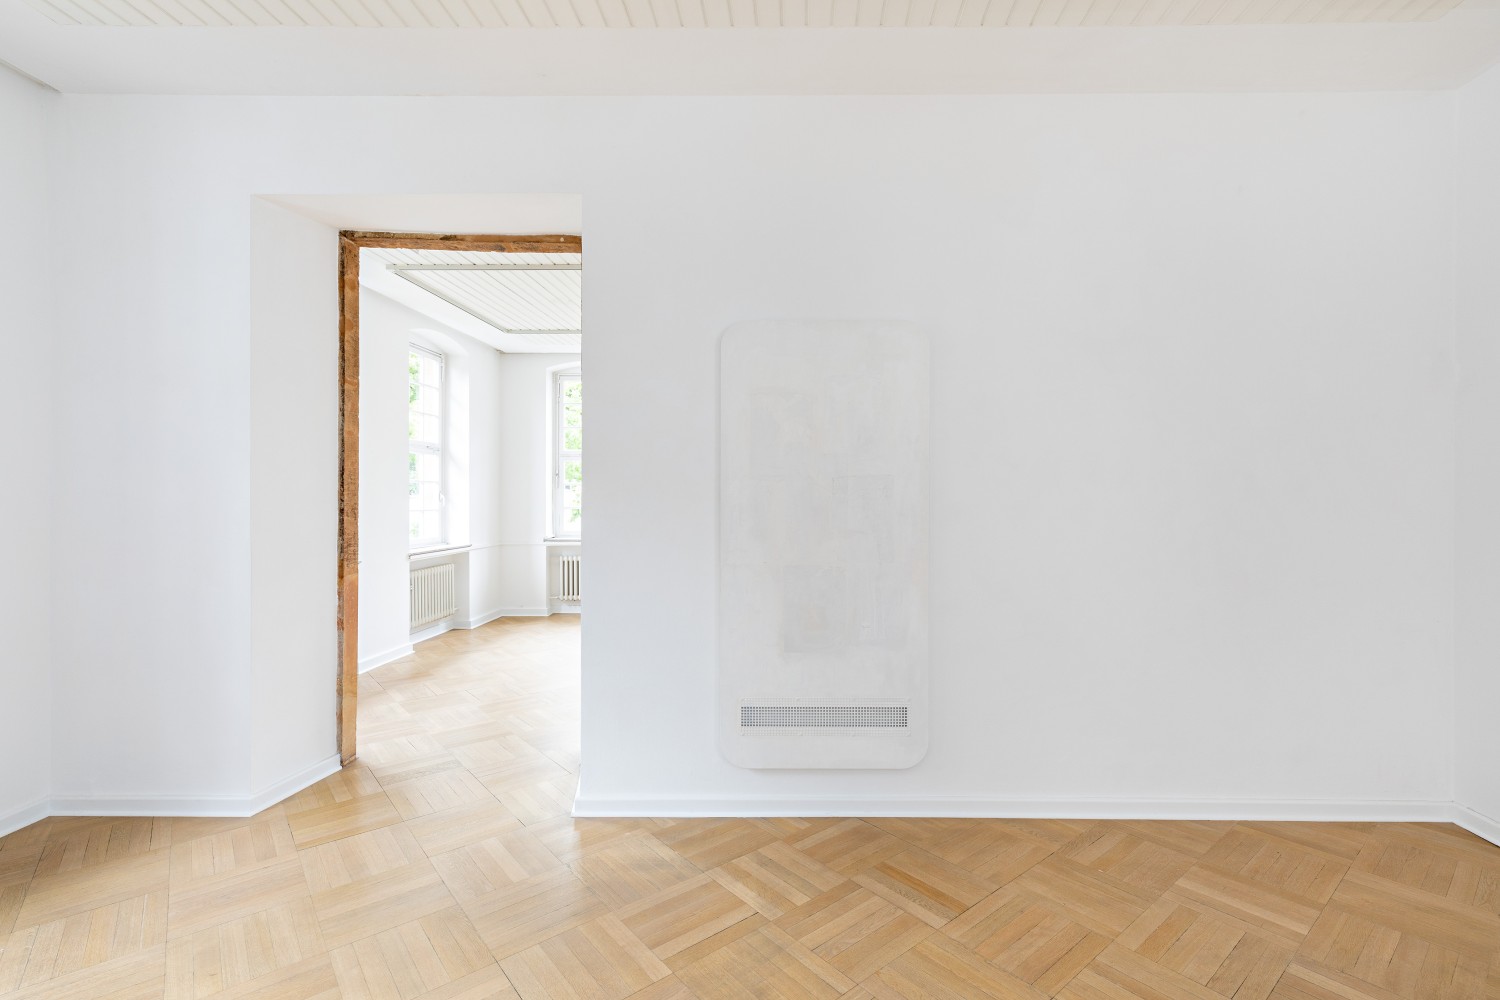 Die Arbeit „Ghost“ von Leda Bourgogne besteht aus Lack, Zeitungspapier auf Holz und Aluminium. Durch das weiße Gitter am unteren Bildrand lässt sich die das Werk tragende Wand erkennen.